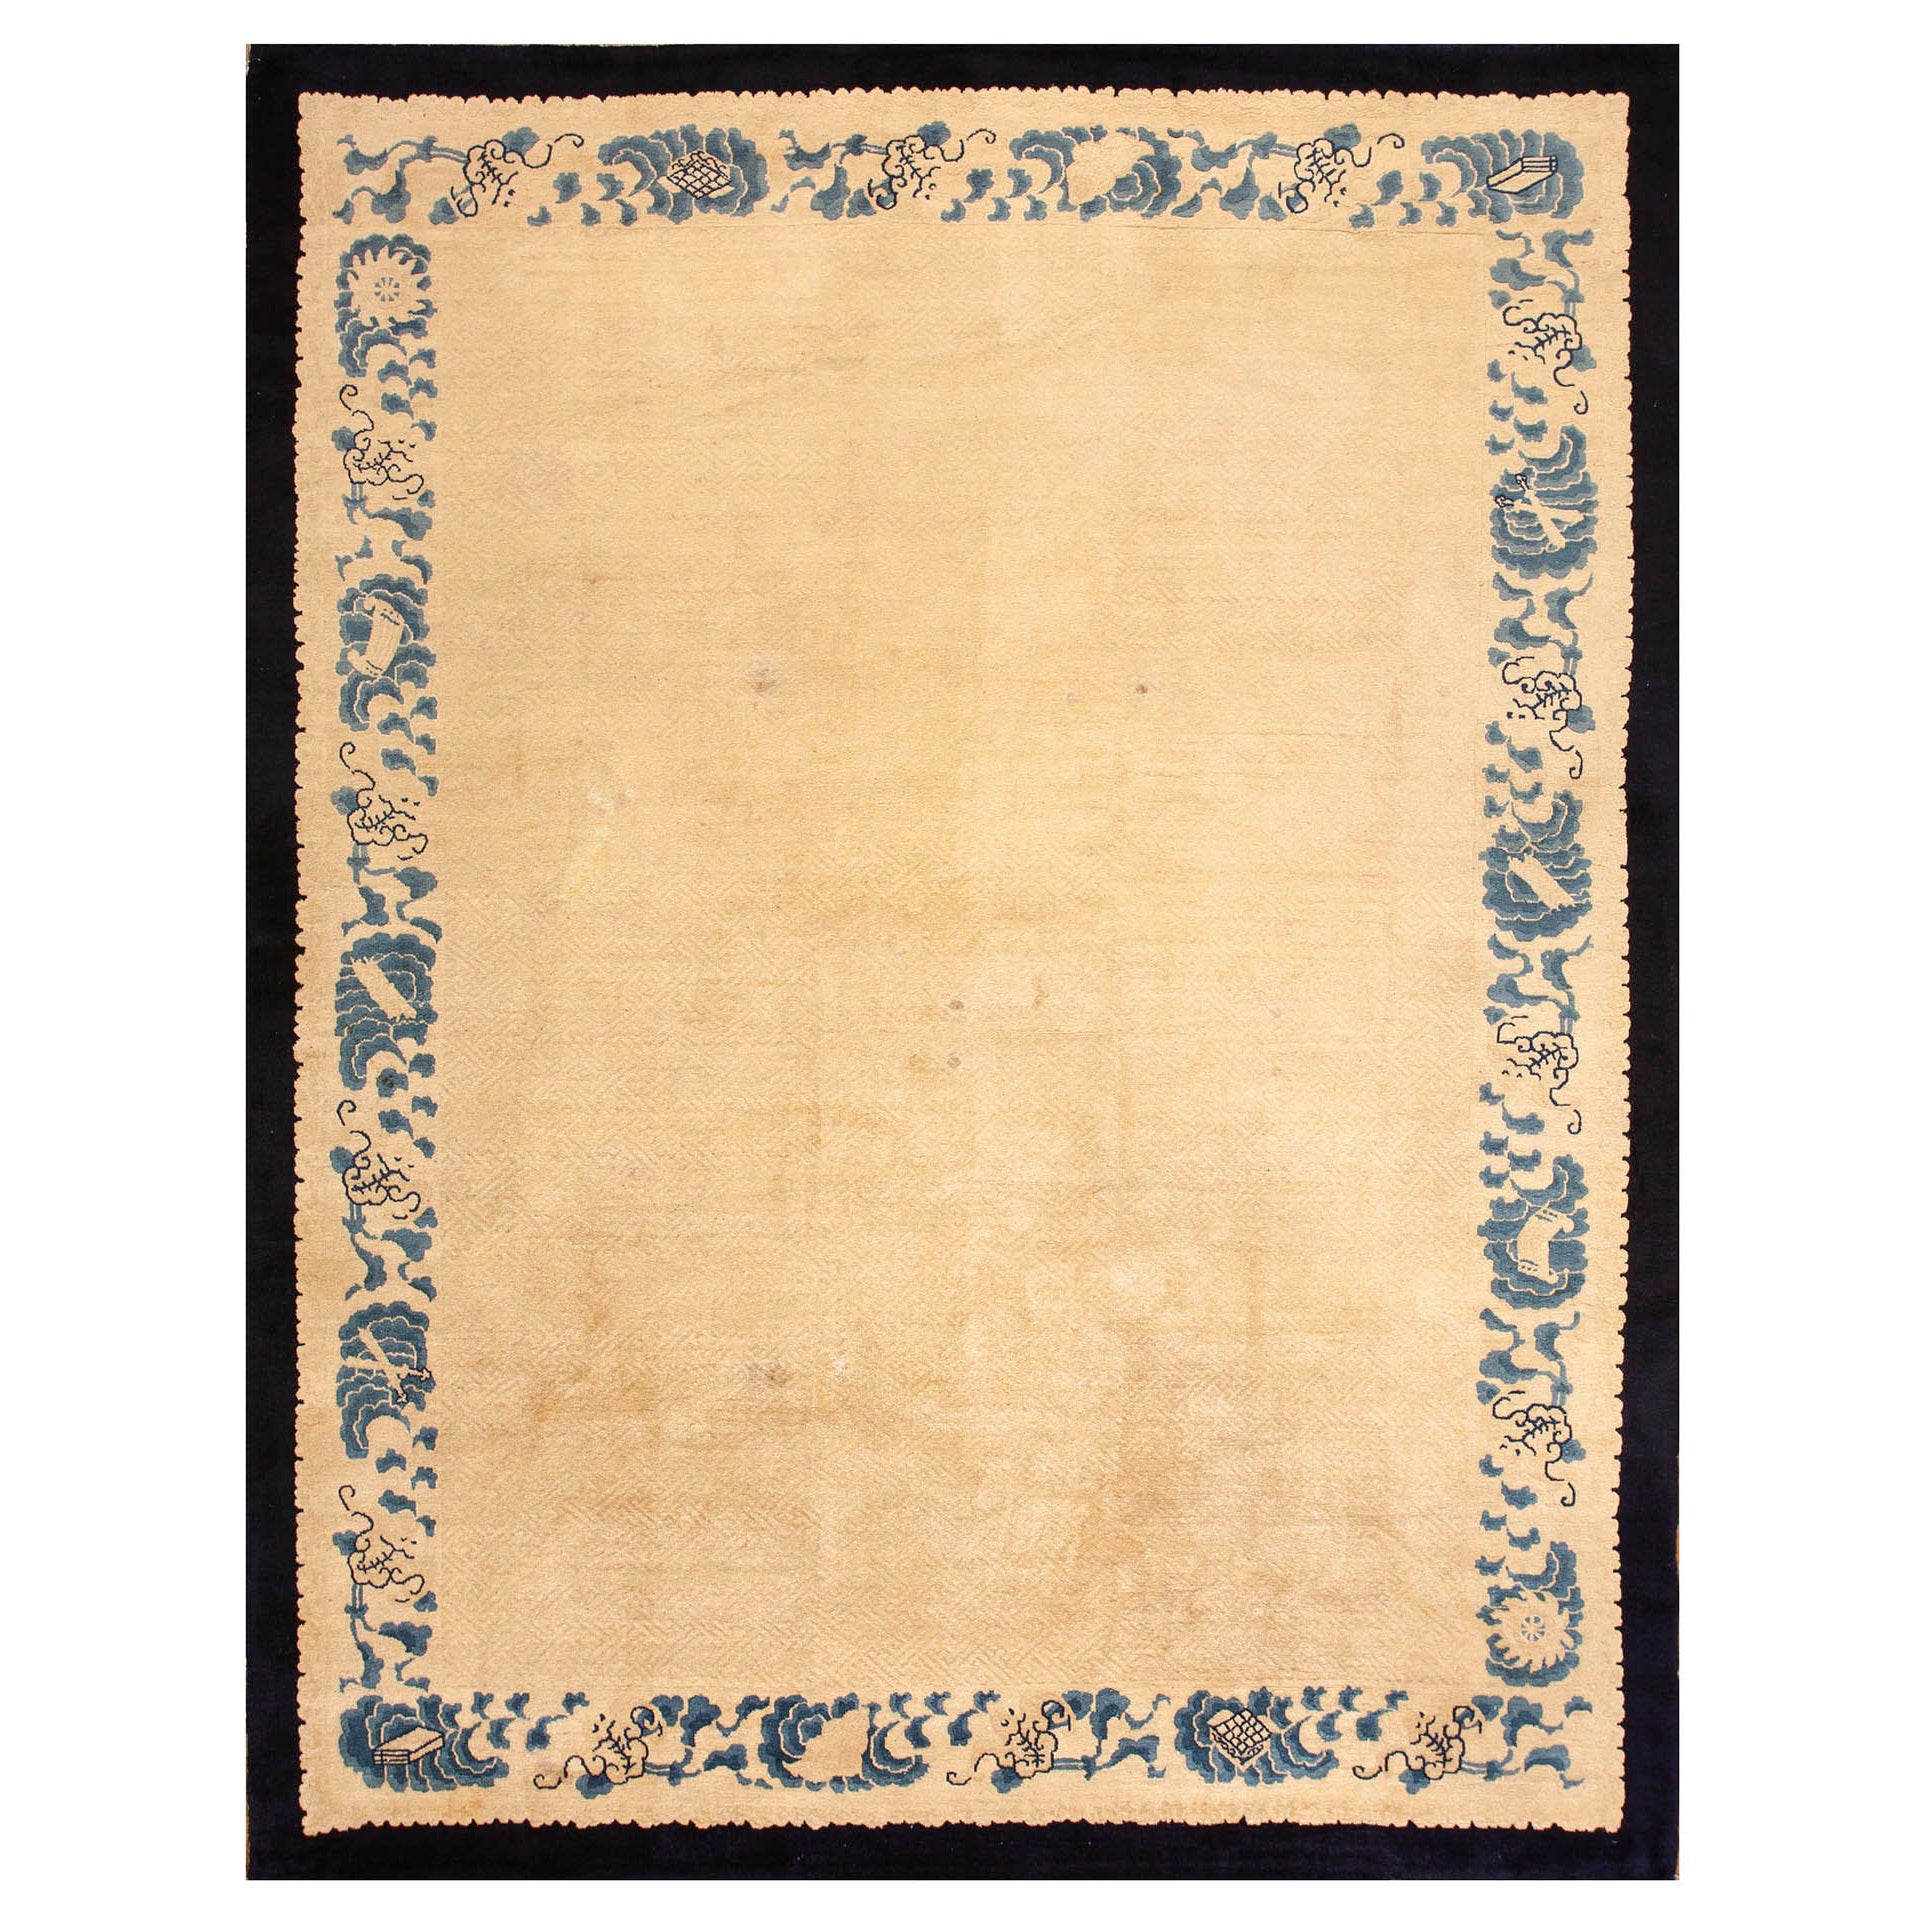 Chinesischer Peking-Teppich des 19. Jahrhunderts ( 9'2'' x 11'8'' - 280 x 355 )